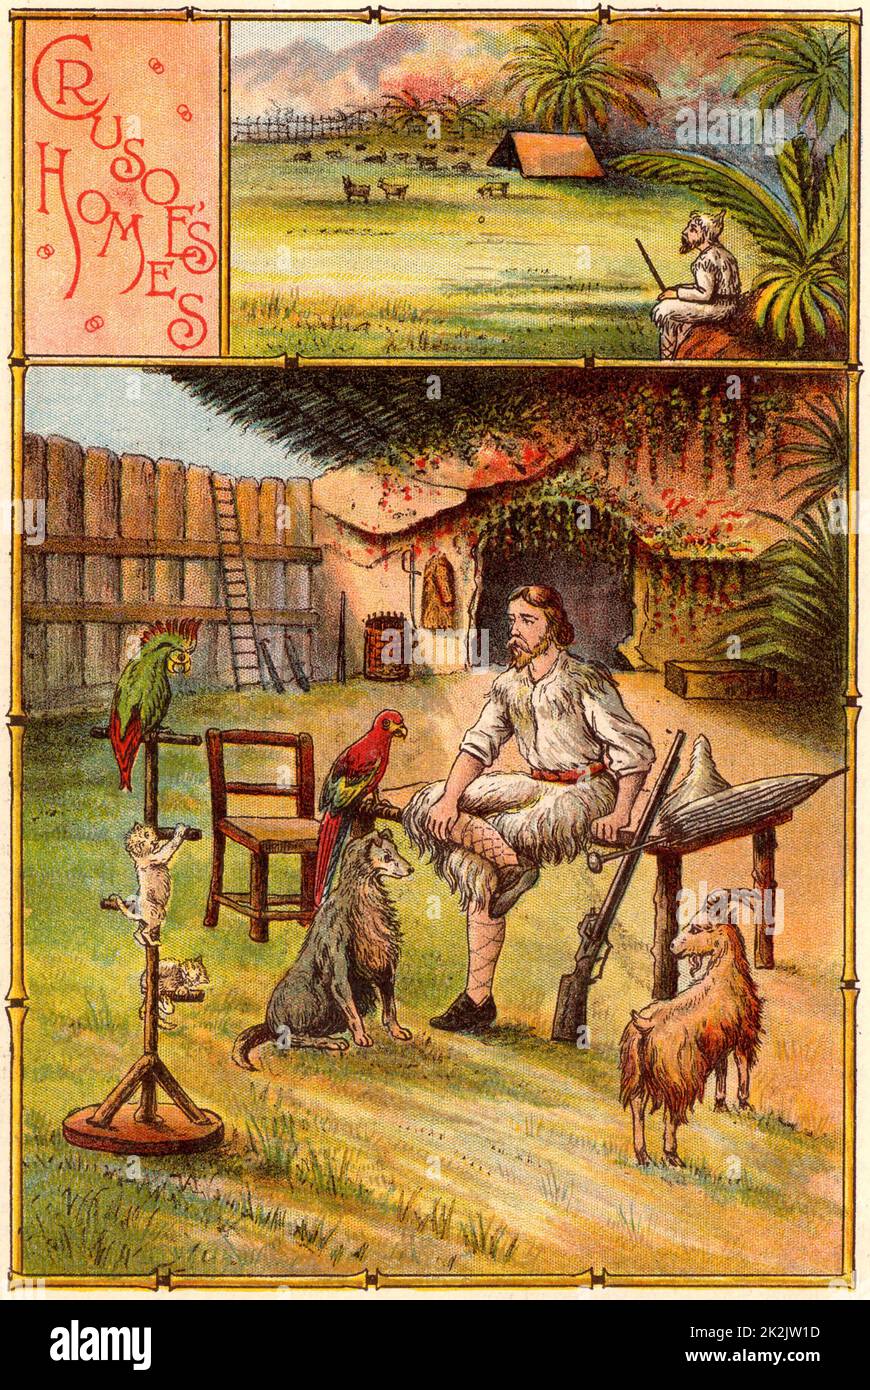 „The Life and Strange Surprising Adventures of Robinson Crusoe“ von Daniel Defoe. Er wurde erstmals 1719 veröffentlicht und gilt als der erste englische Roman. Crusoe, umgeben von seinen Haustieren, außerhalb der Höhle hat er sein Zuhause gemacht und durch eine Stockade geschützt. Auf dem Gipfel befindet sich ein Zelt auf einem grasbewachsenen Hochplateau, das er als Sommerresidenz nutzte. Aus „Bubbles“ c1900, veröffentlicht von Dr. Barnados Homes for Children. Oleograph. Stockfoto